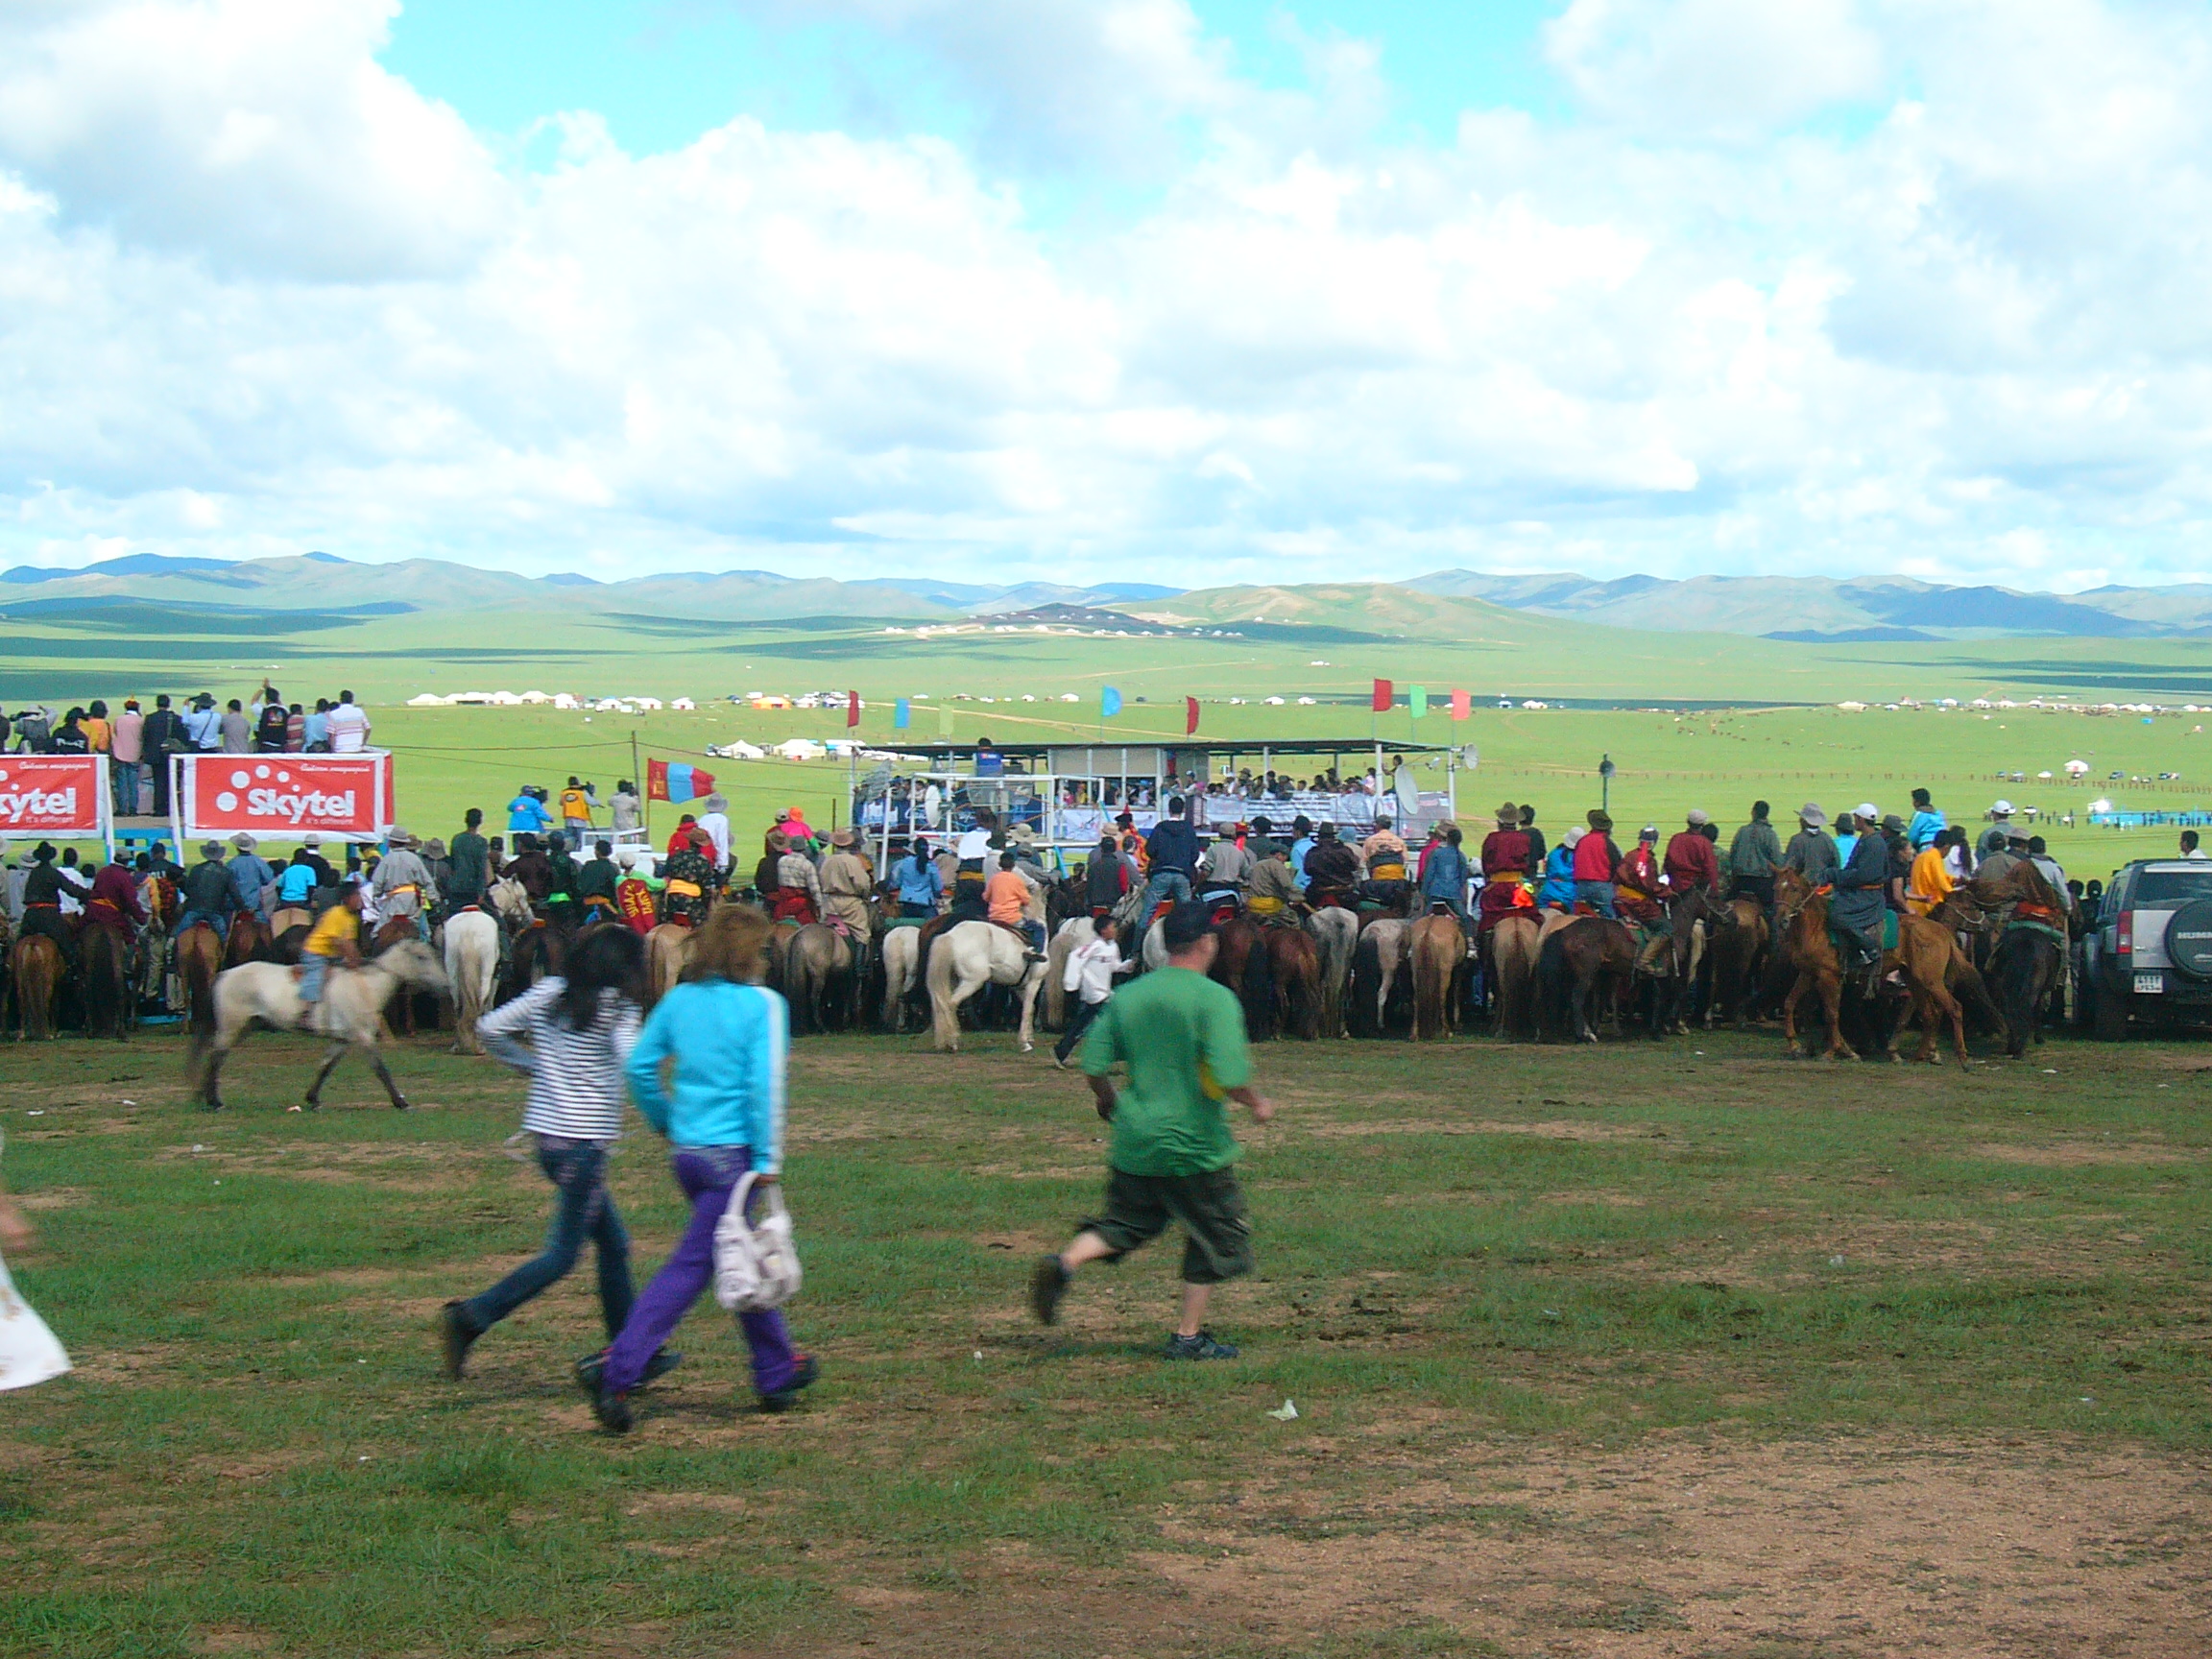  Horse race Mongolia 